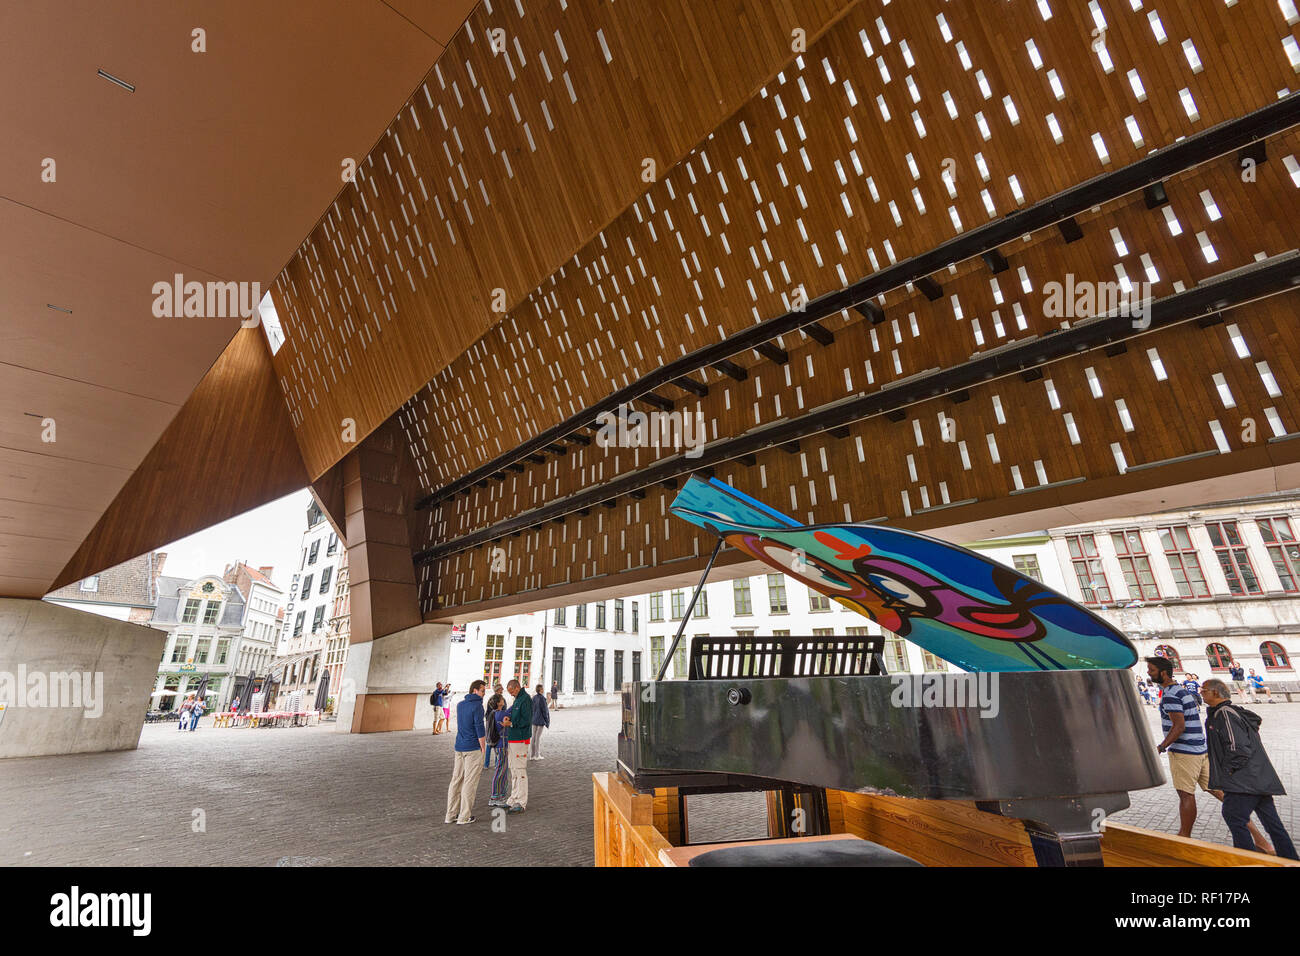 La structure du toit en verre, bois et béton du pavillon de la ville de Gand, Belgique Banque D'Images